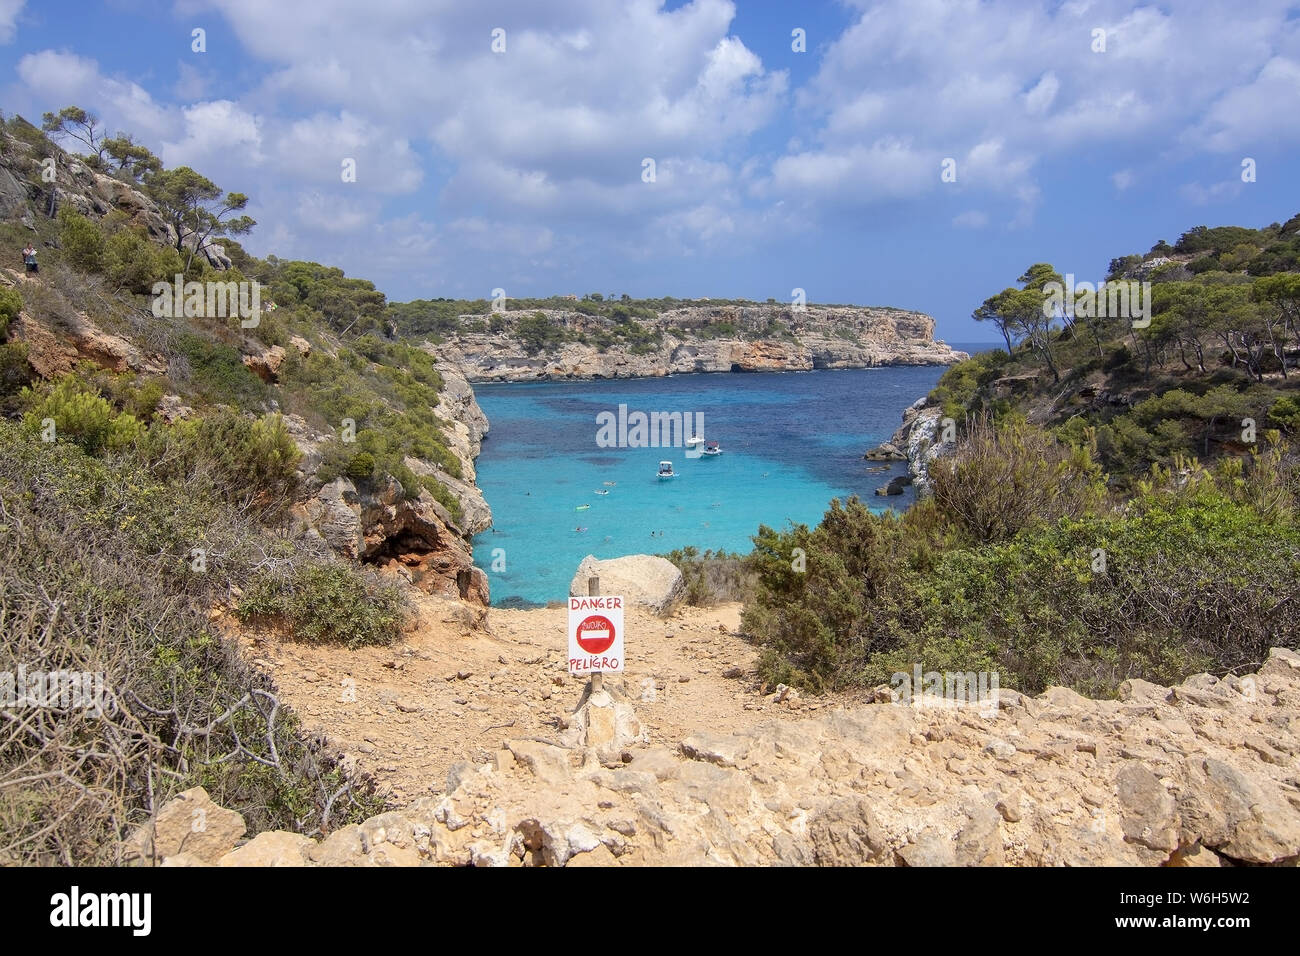 CALO DES MORO, Mallorca, España - Julio 27, 2019: señal de peligro por extremadamente pequeña bahía de aguas turquesas y acantilados escarpados en un día soleado en Julio 27, 2019 En Calo Foto de stock